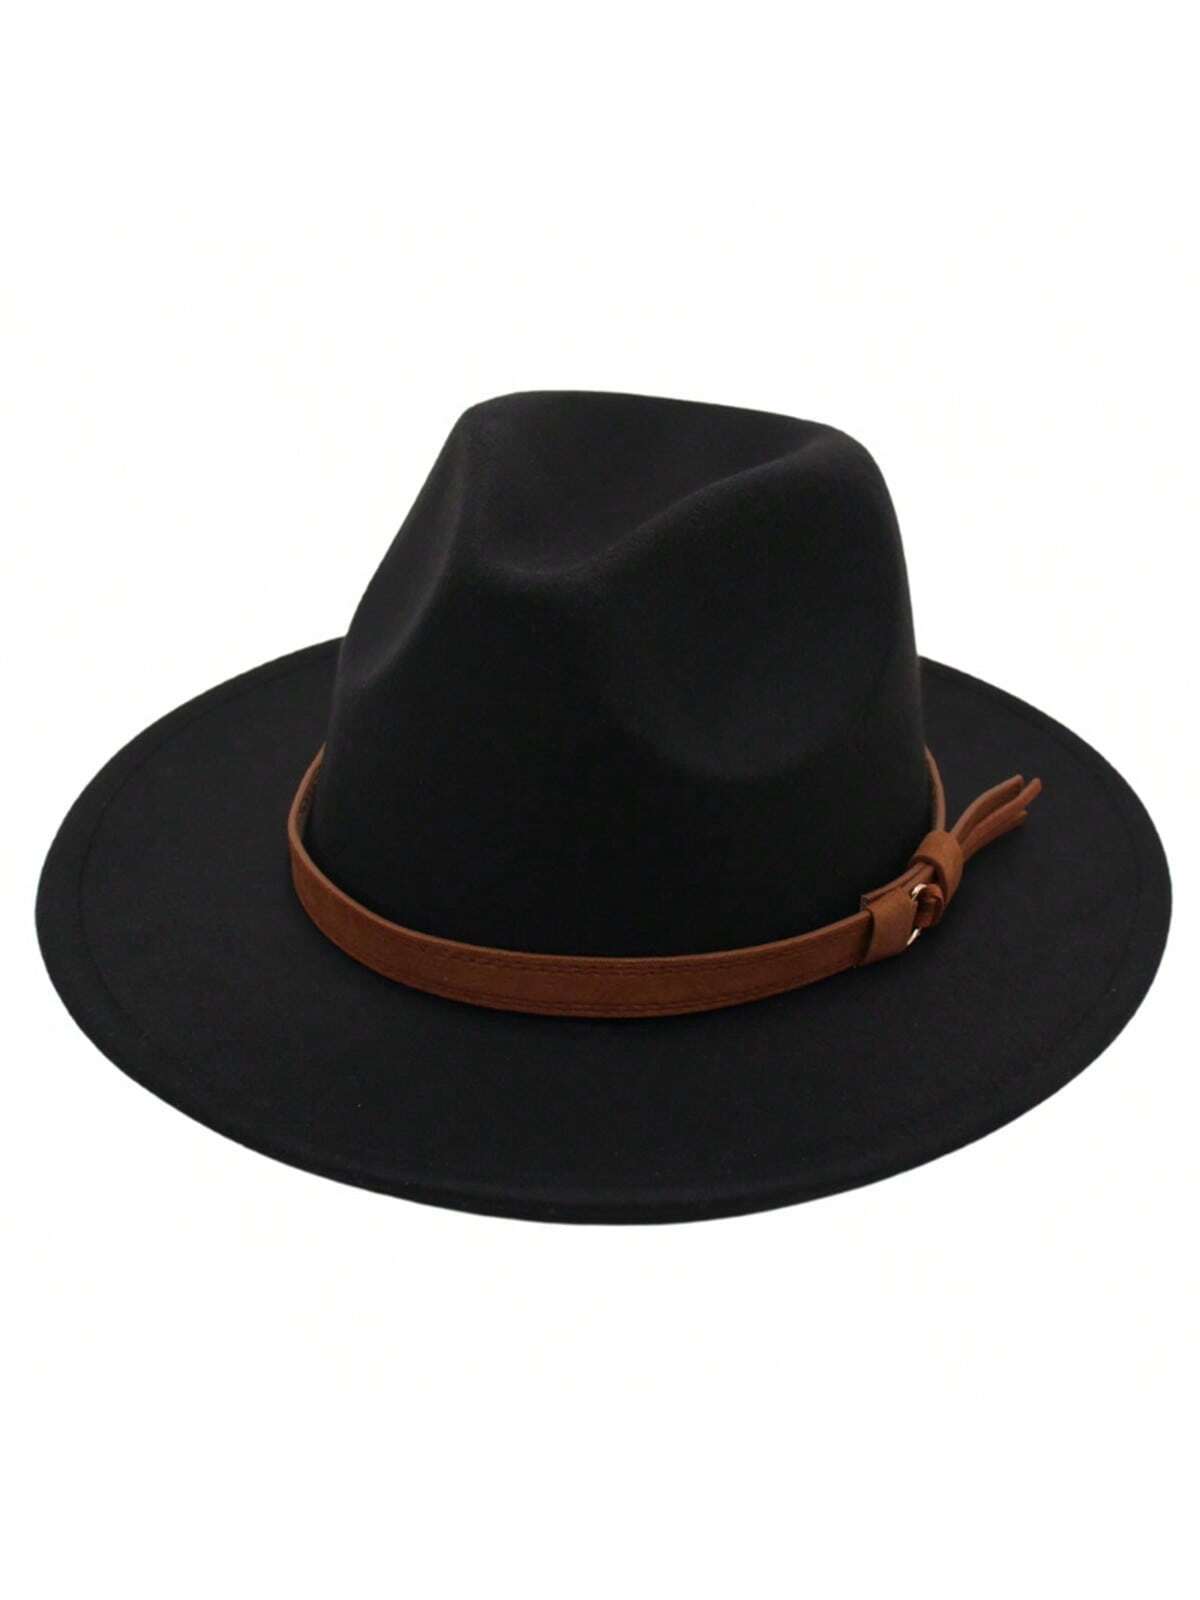 1 шт. черная шляпа Fedora в британском стиле с пряжкой ремня, черный